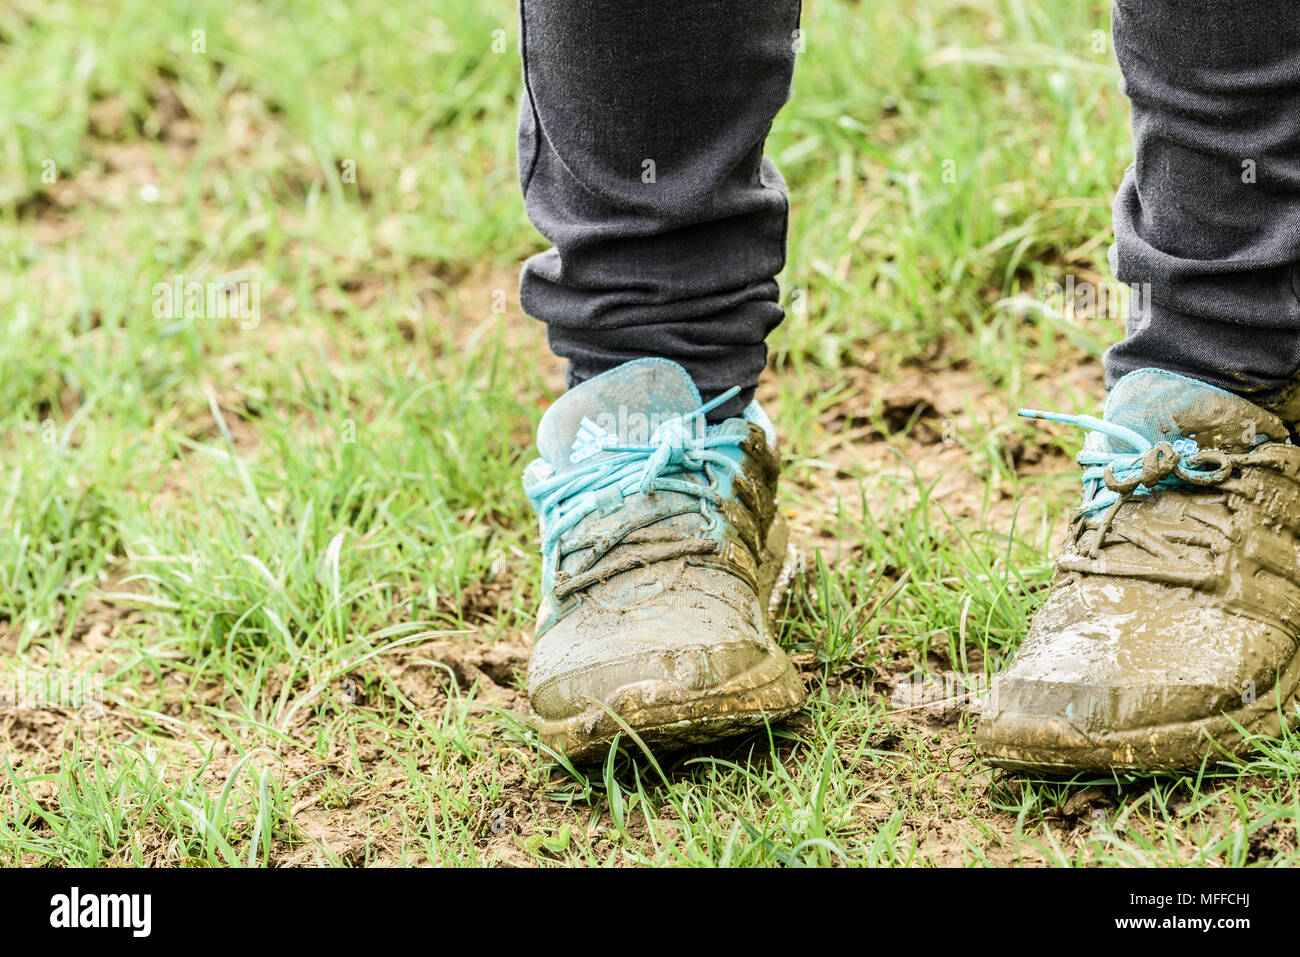 Sur un terrain humide dans la campagne de l'Angleterre East Midlands, un malheureux enfant a brouillé les chaussures bleu qui sont sa fierté et de joie. Banque D'Images